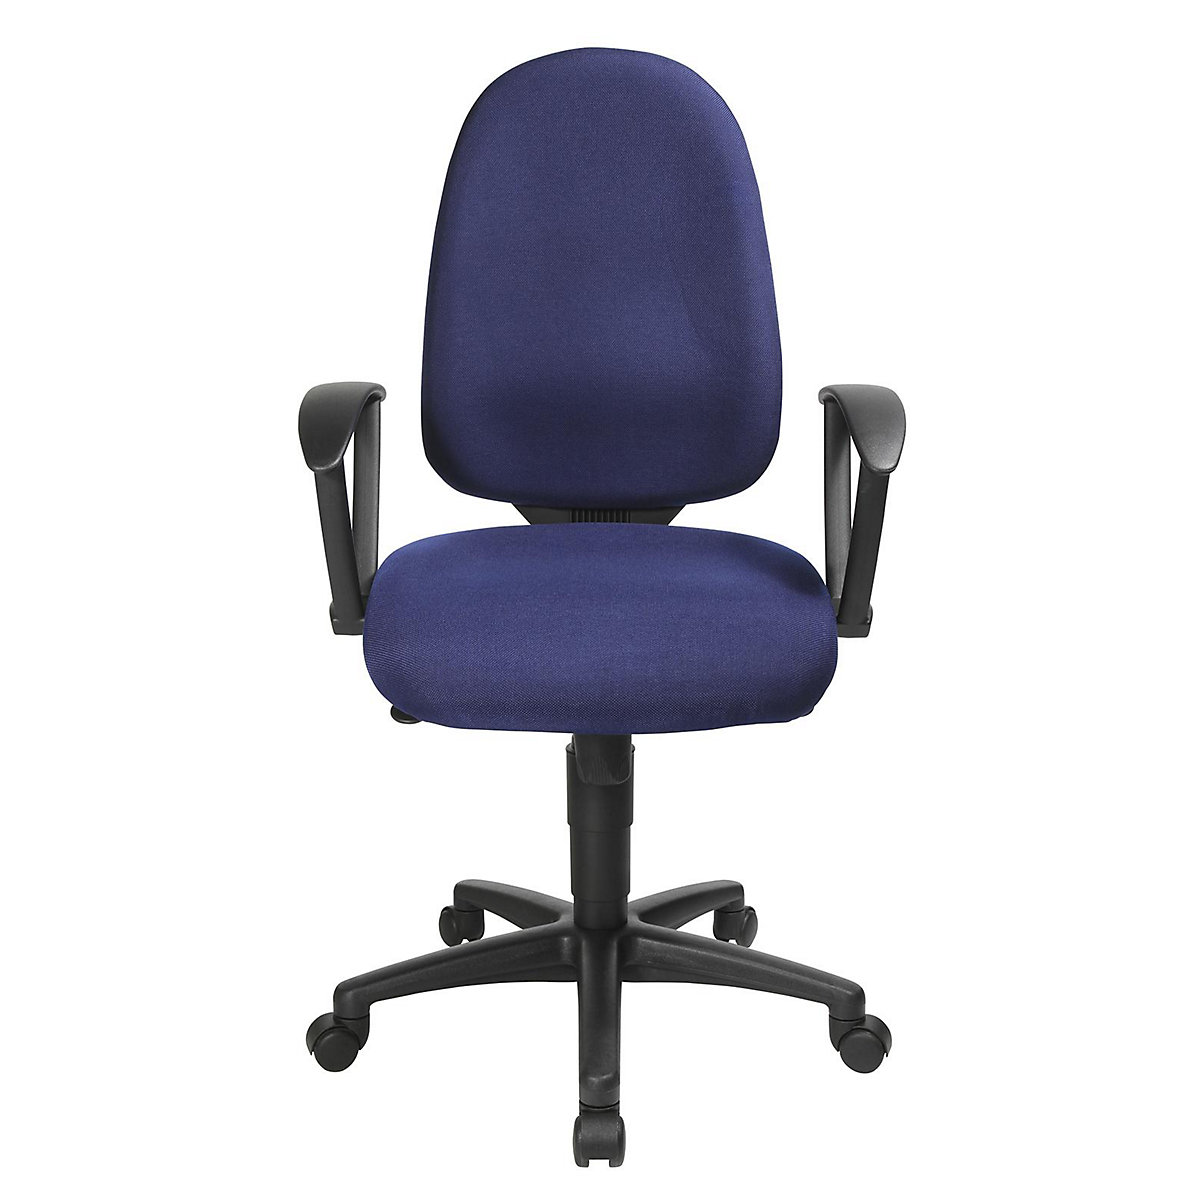 Okretna stolica s potporom za kralježnicu, sinkrona mehanika, sjedalo s potporom za kralježnicu – Topstar (Prikaz proizvoda 50)-49